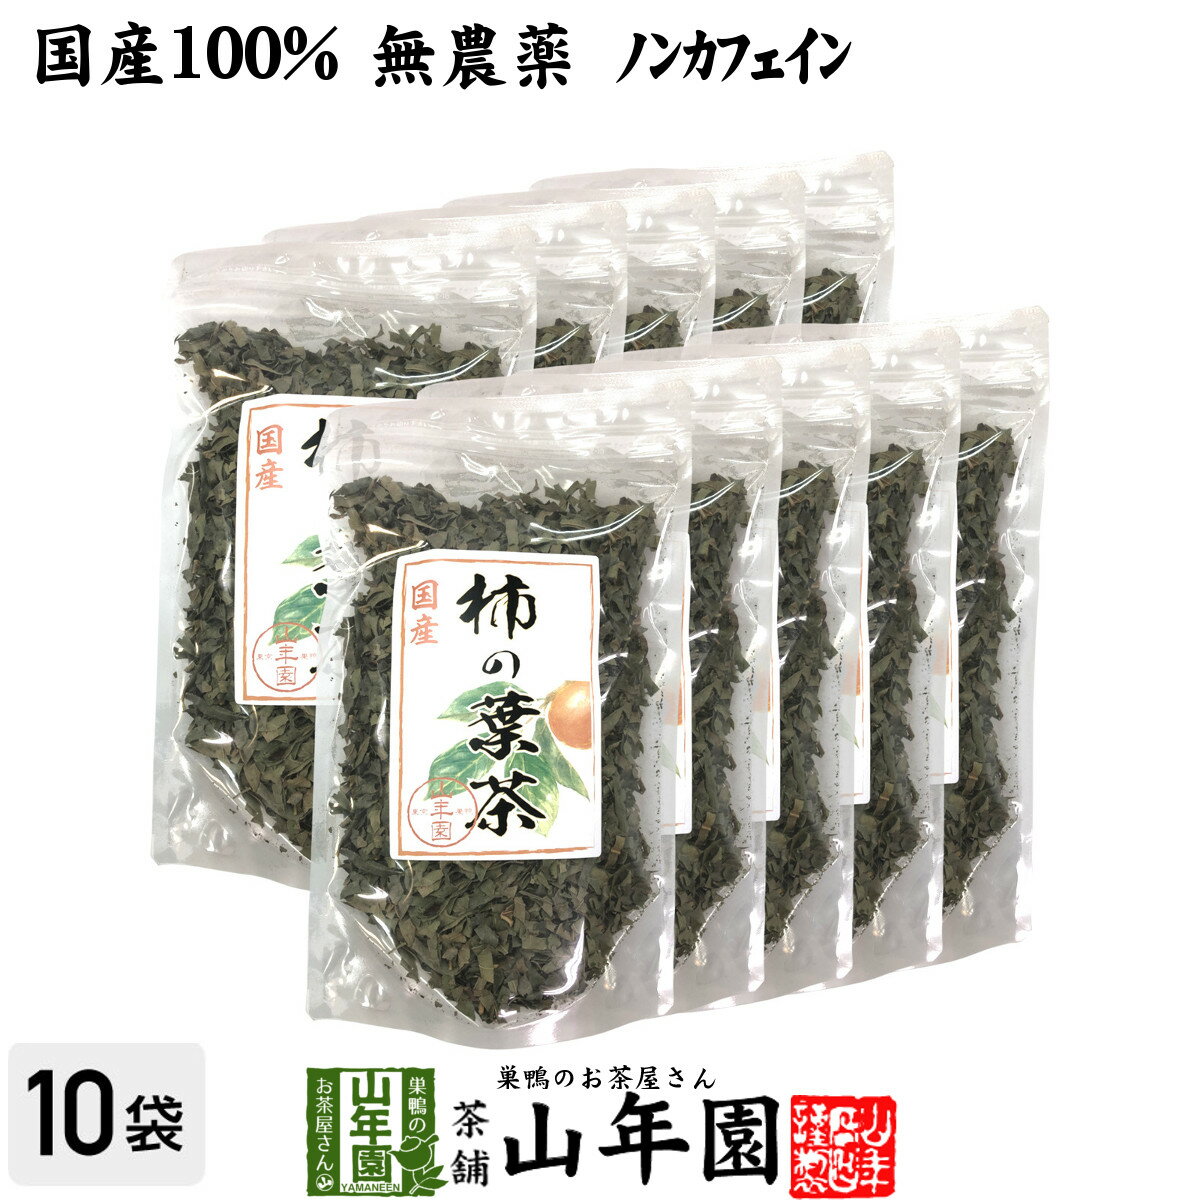 【国産 無農薬】柿の葉茶 80g×10袋セット ノンカフェイ